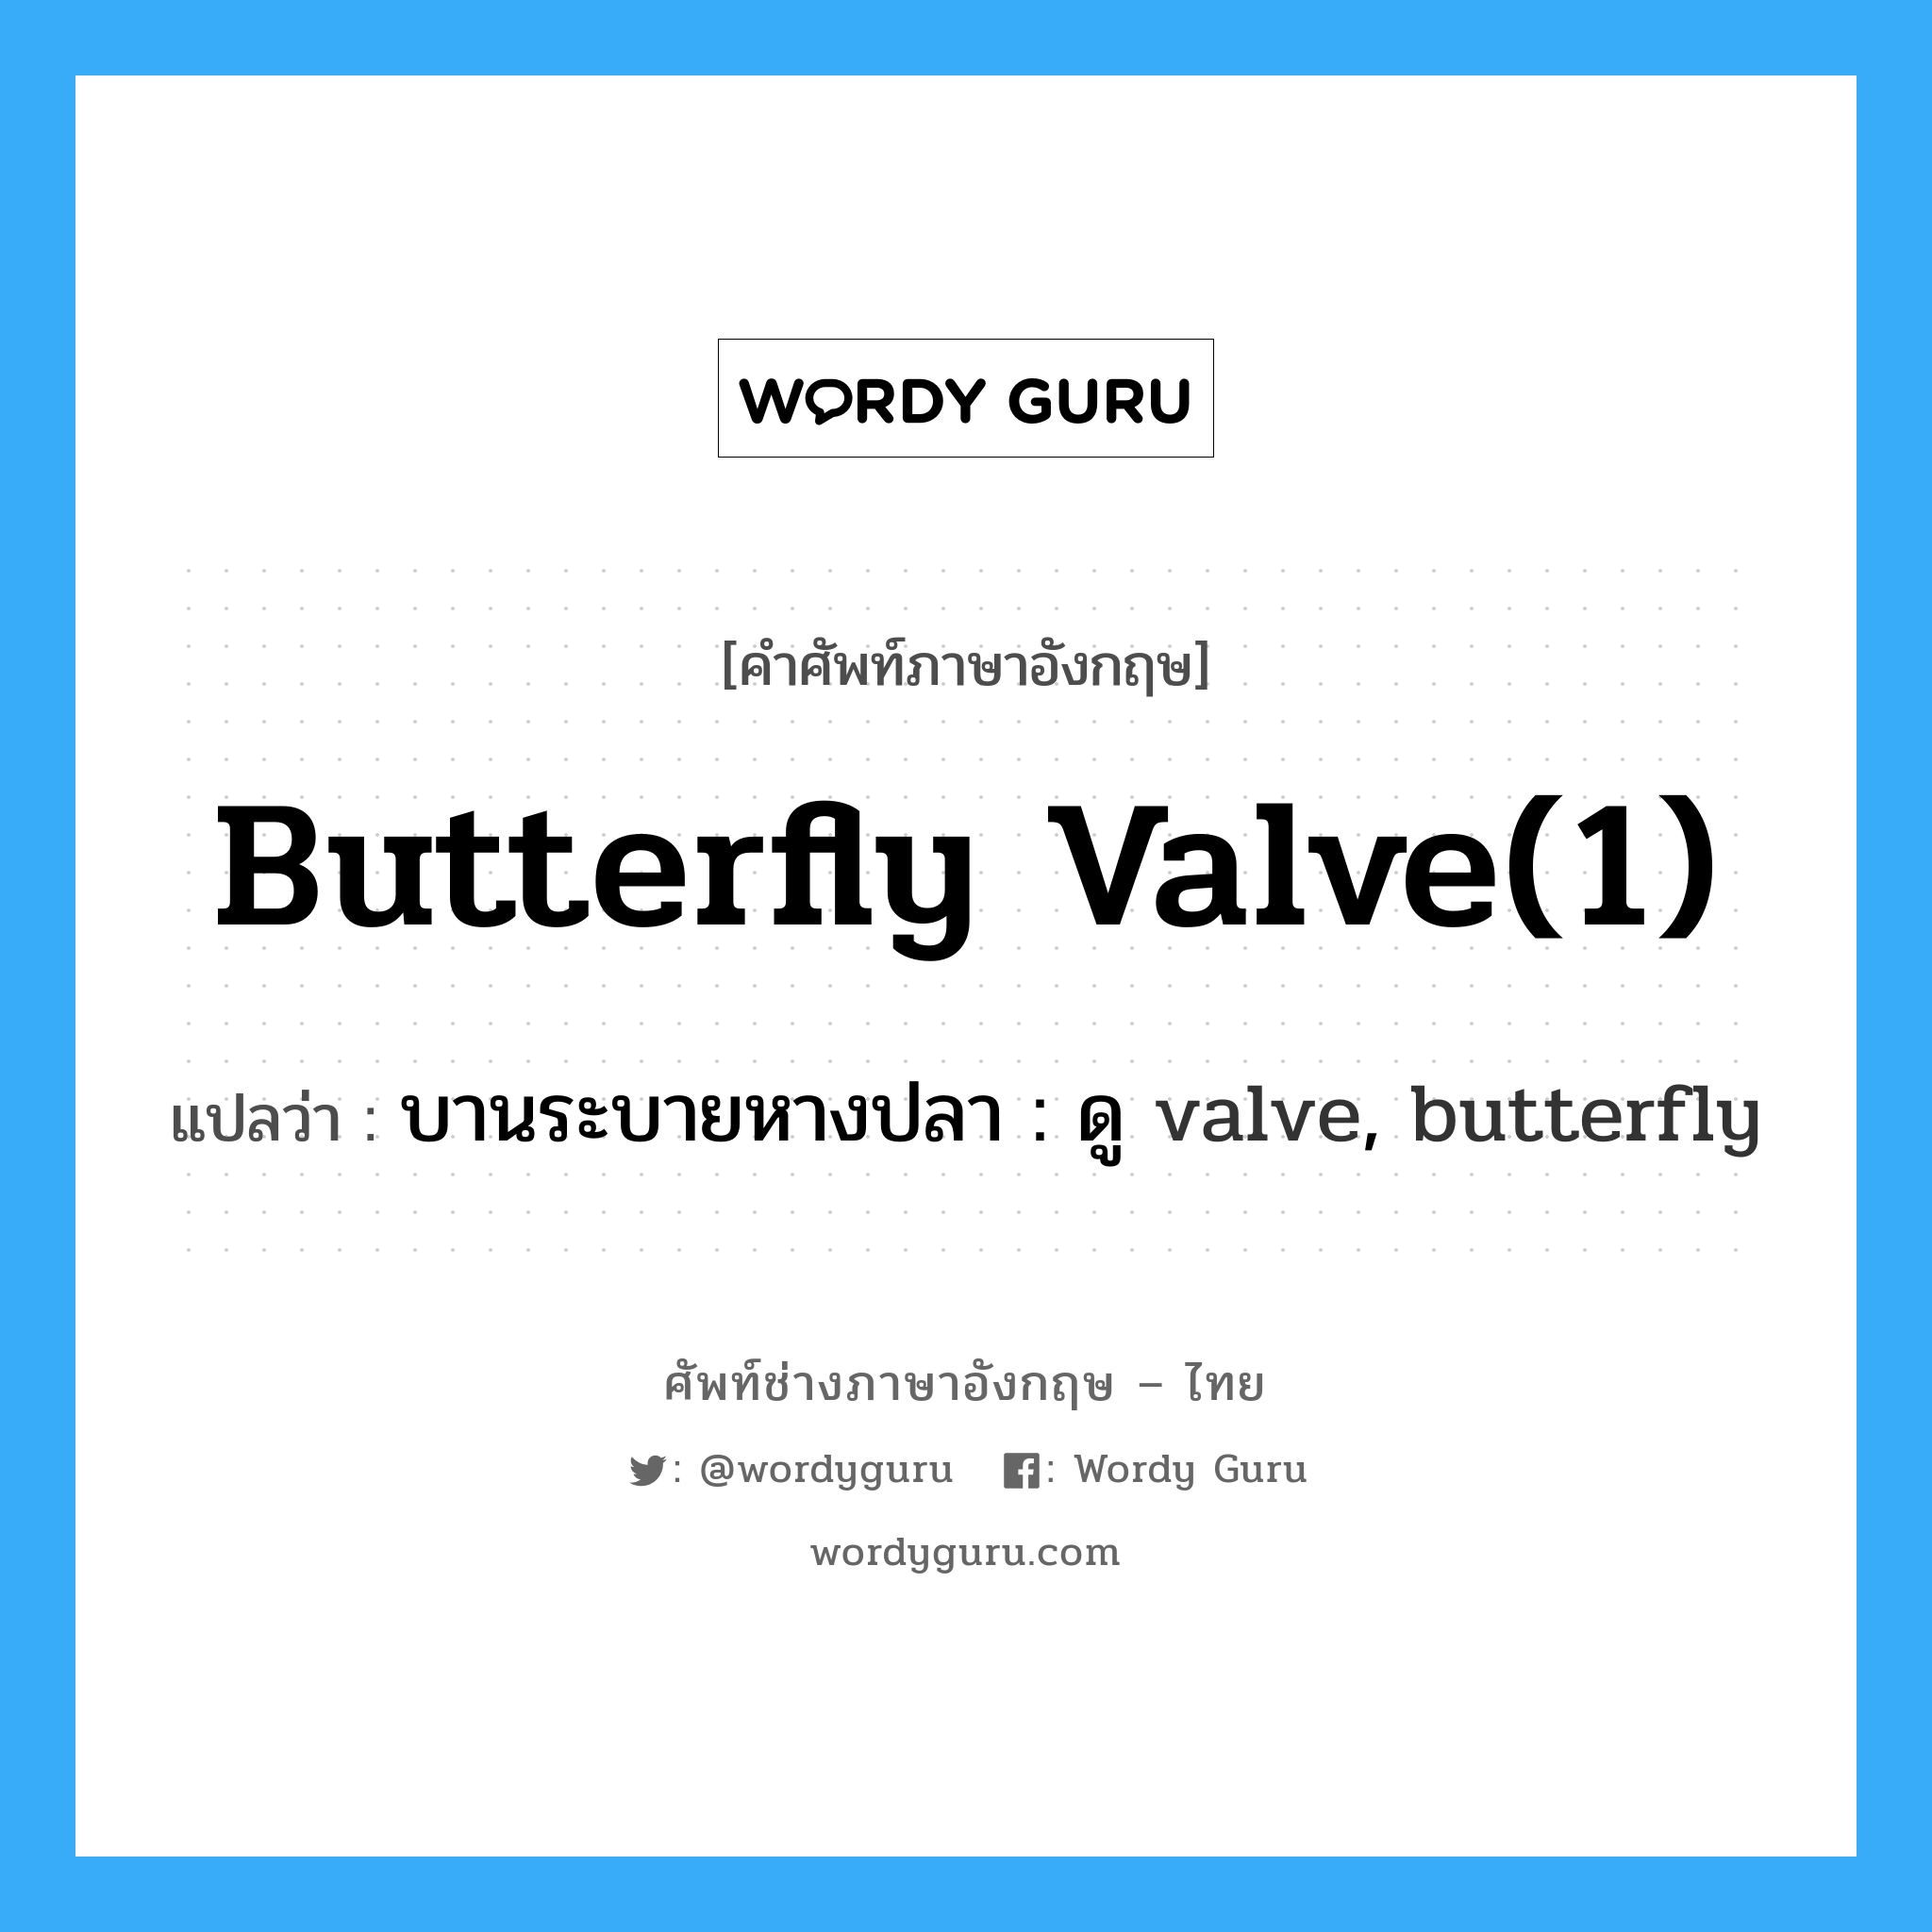 บานระบายหางปลา : ดู valve, butterfly ภาษาอังกฤษ?, คำศัพท์ช่างภาษาอังกฤษ - ไทย บานระบายหางปลา : ดู valve, butterfly คำศัพท์ภาษาอังกฤษ บานระบายหางปลา : ดู valve, butterfly แปลว่า butterfly valve(1)